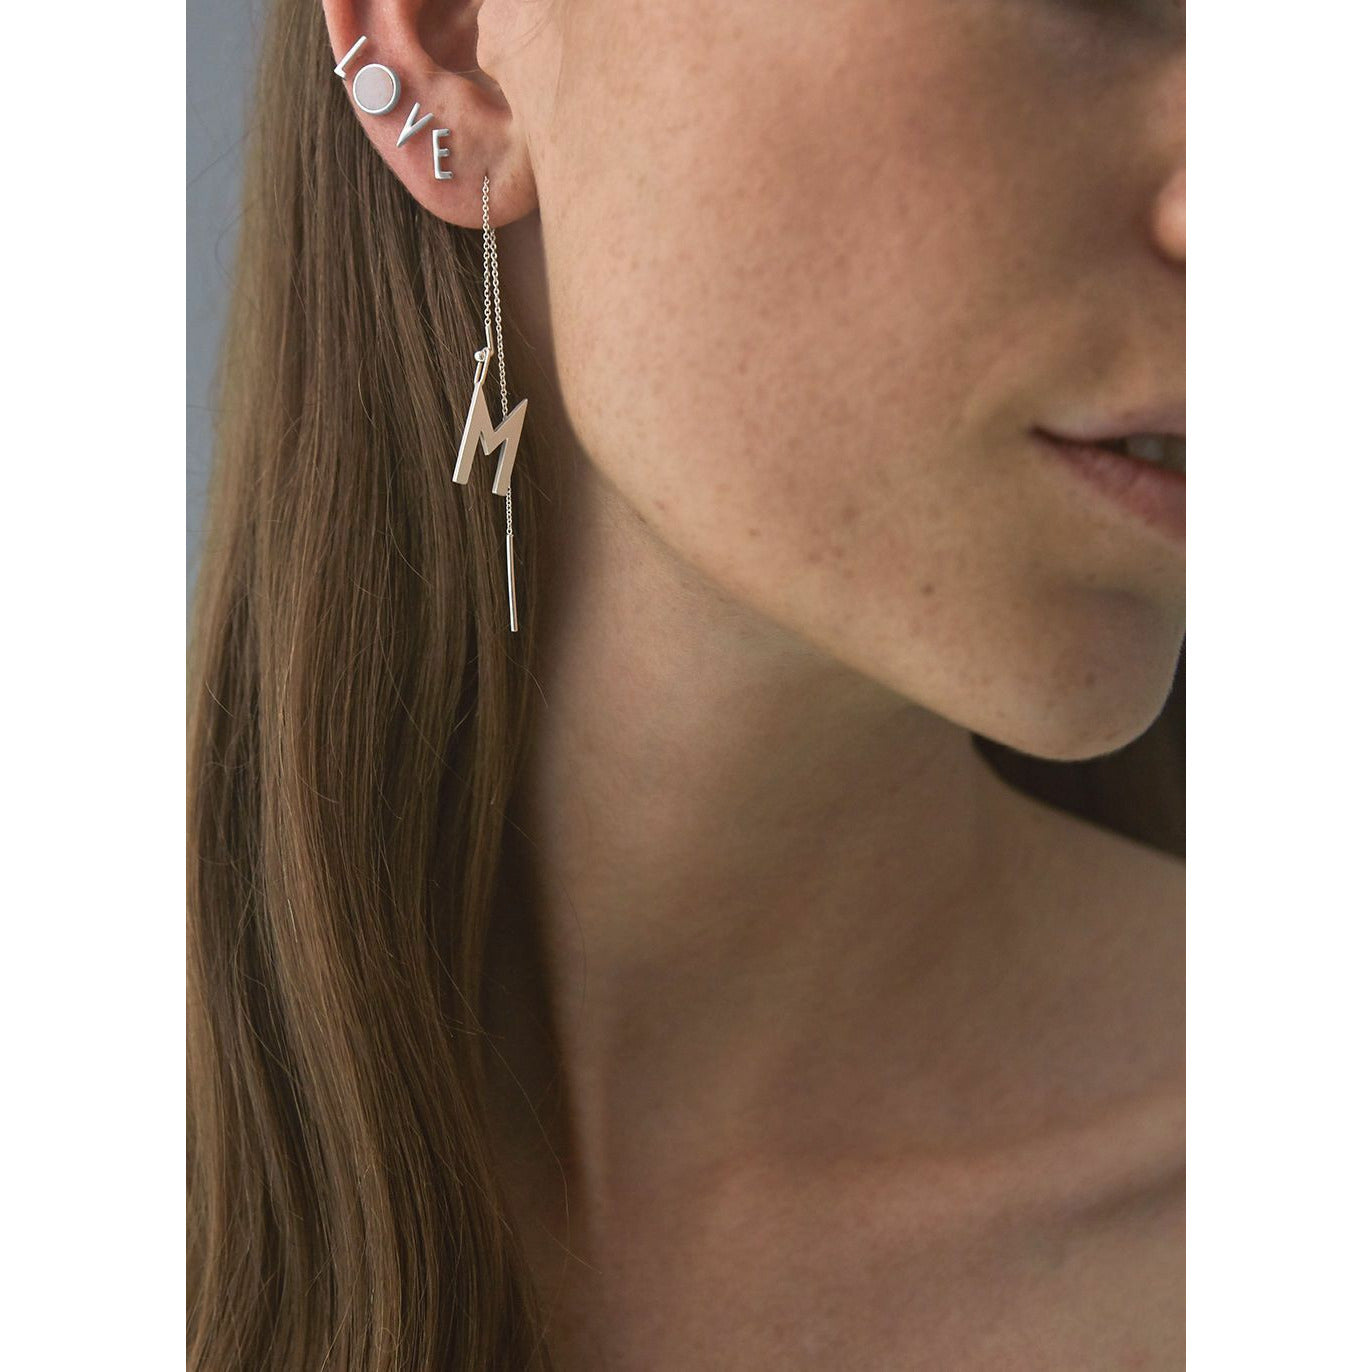 Snačovací hvězda pro design Earring, černá/zlatá